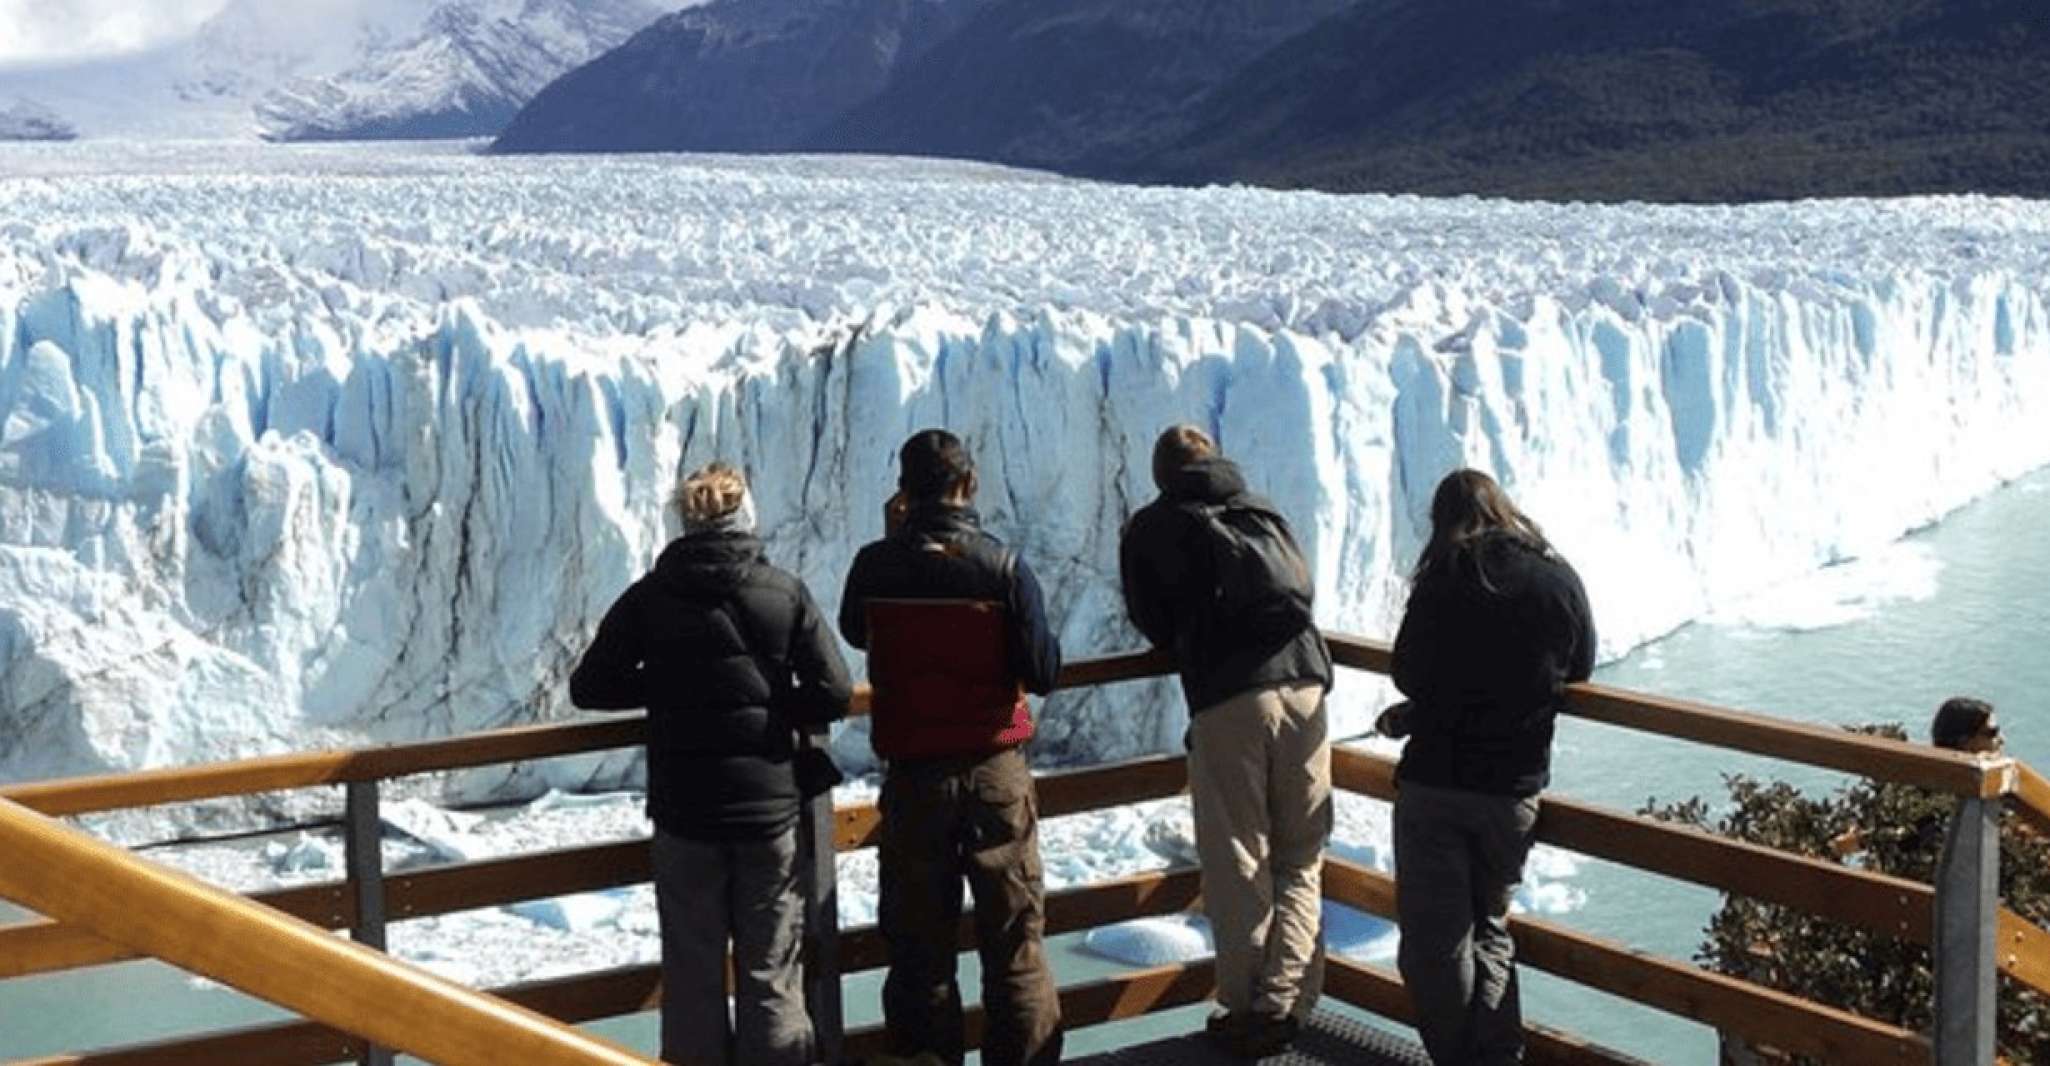 El Calafate, Perito Moreno Glacier Guided Day Tour & Sailing - Housity